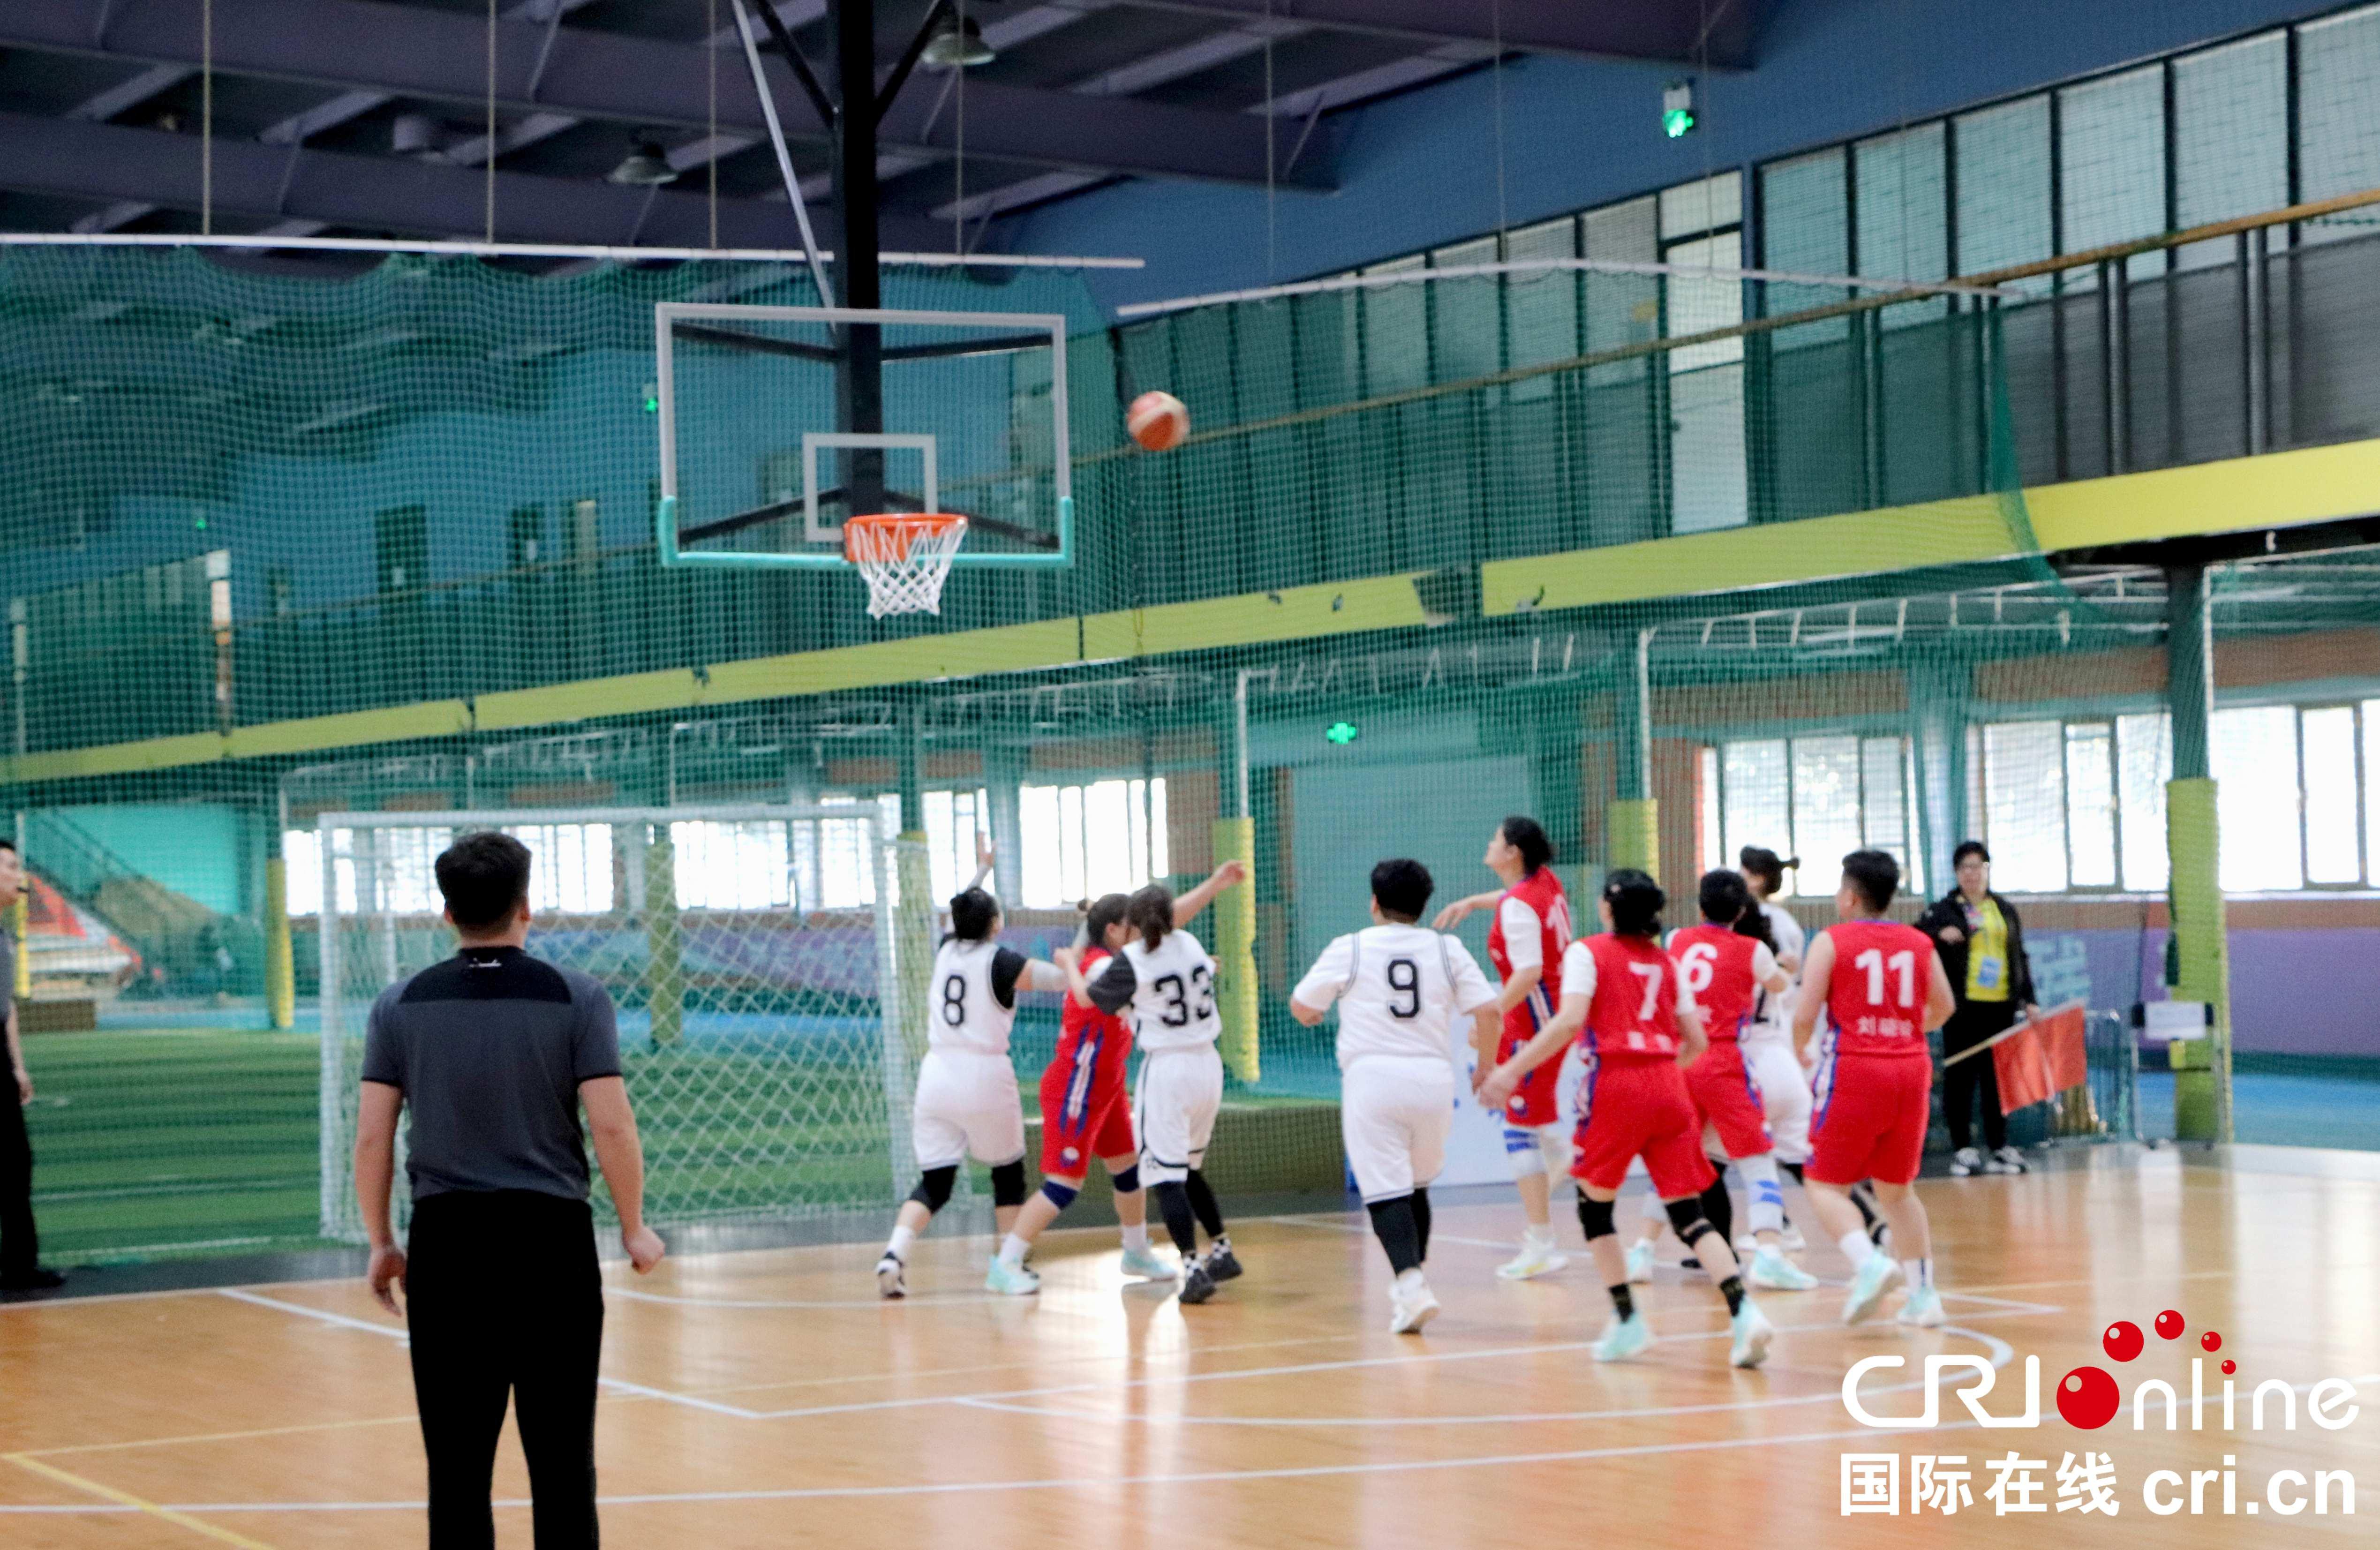 聚焦黑龙江省残运会 | 以篮球之名 奔赴一场无声的热爱(1)